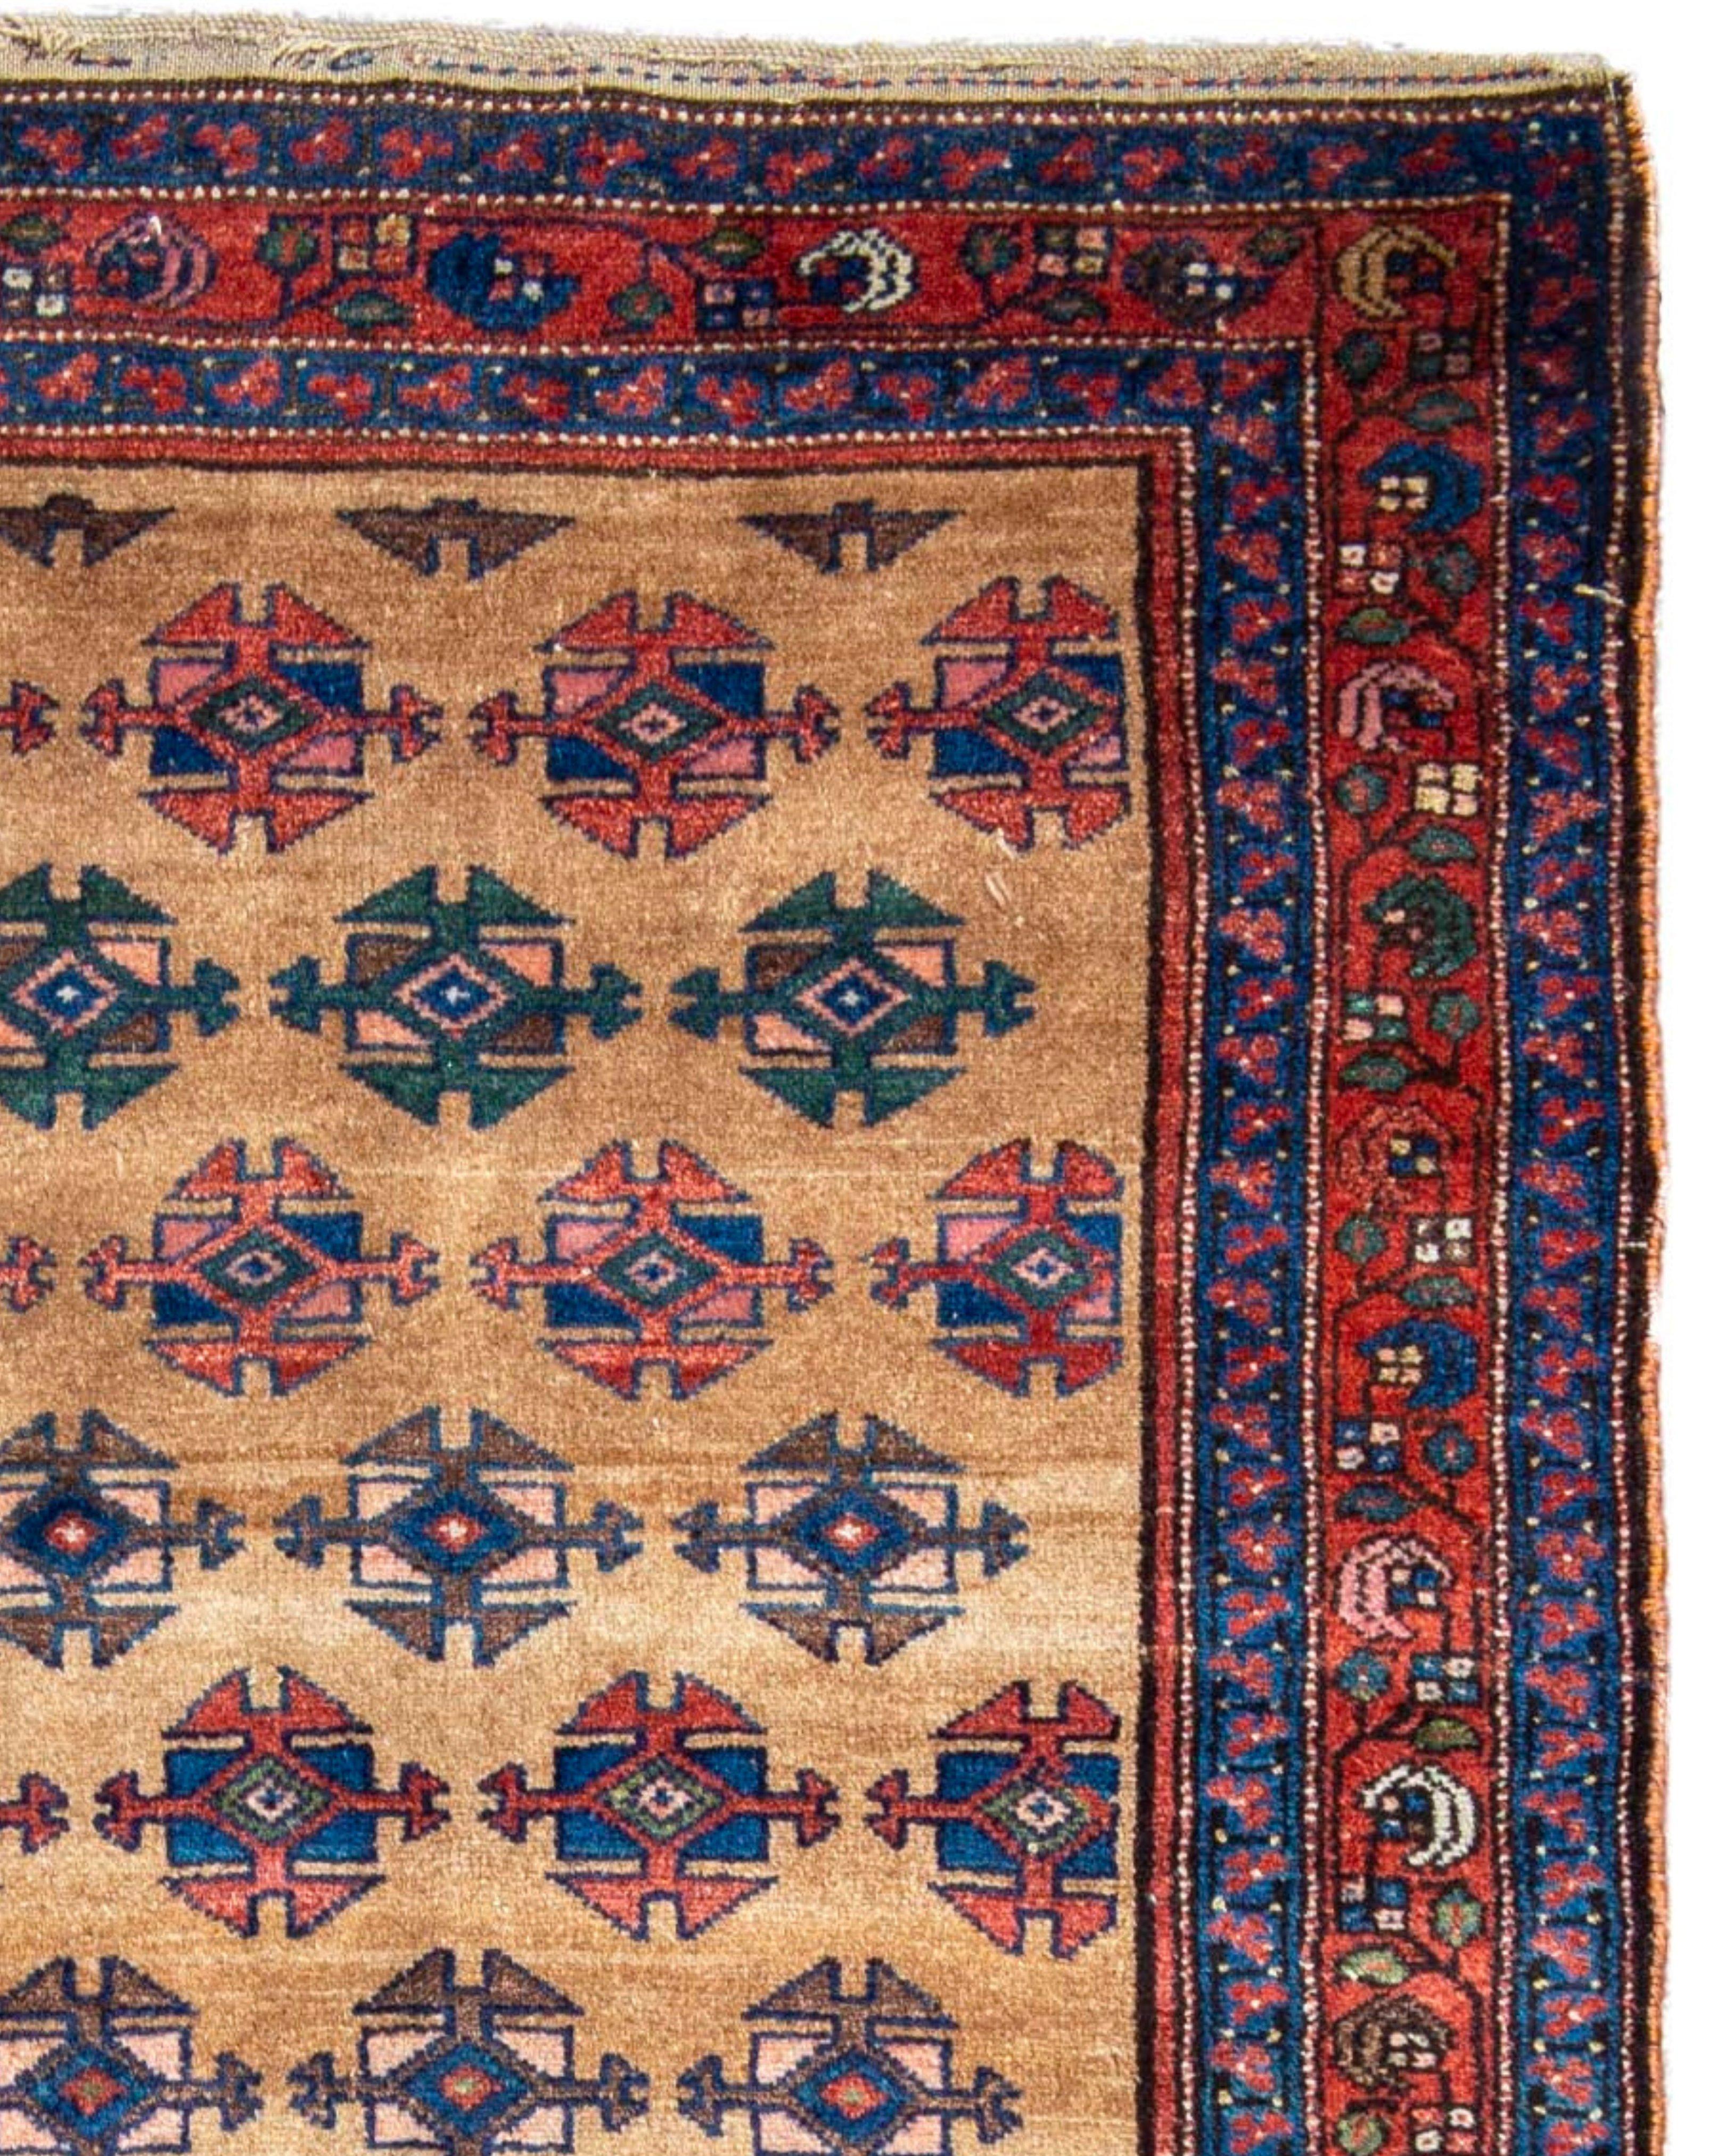 Antiker persisch-kurdischer Langteppich, 19. Jahrhundert

Zusätzliche Informationen:
Abmessungen: 4'3